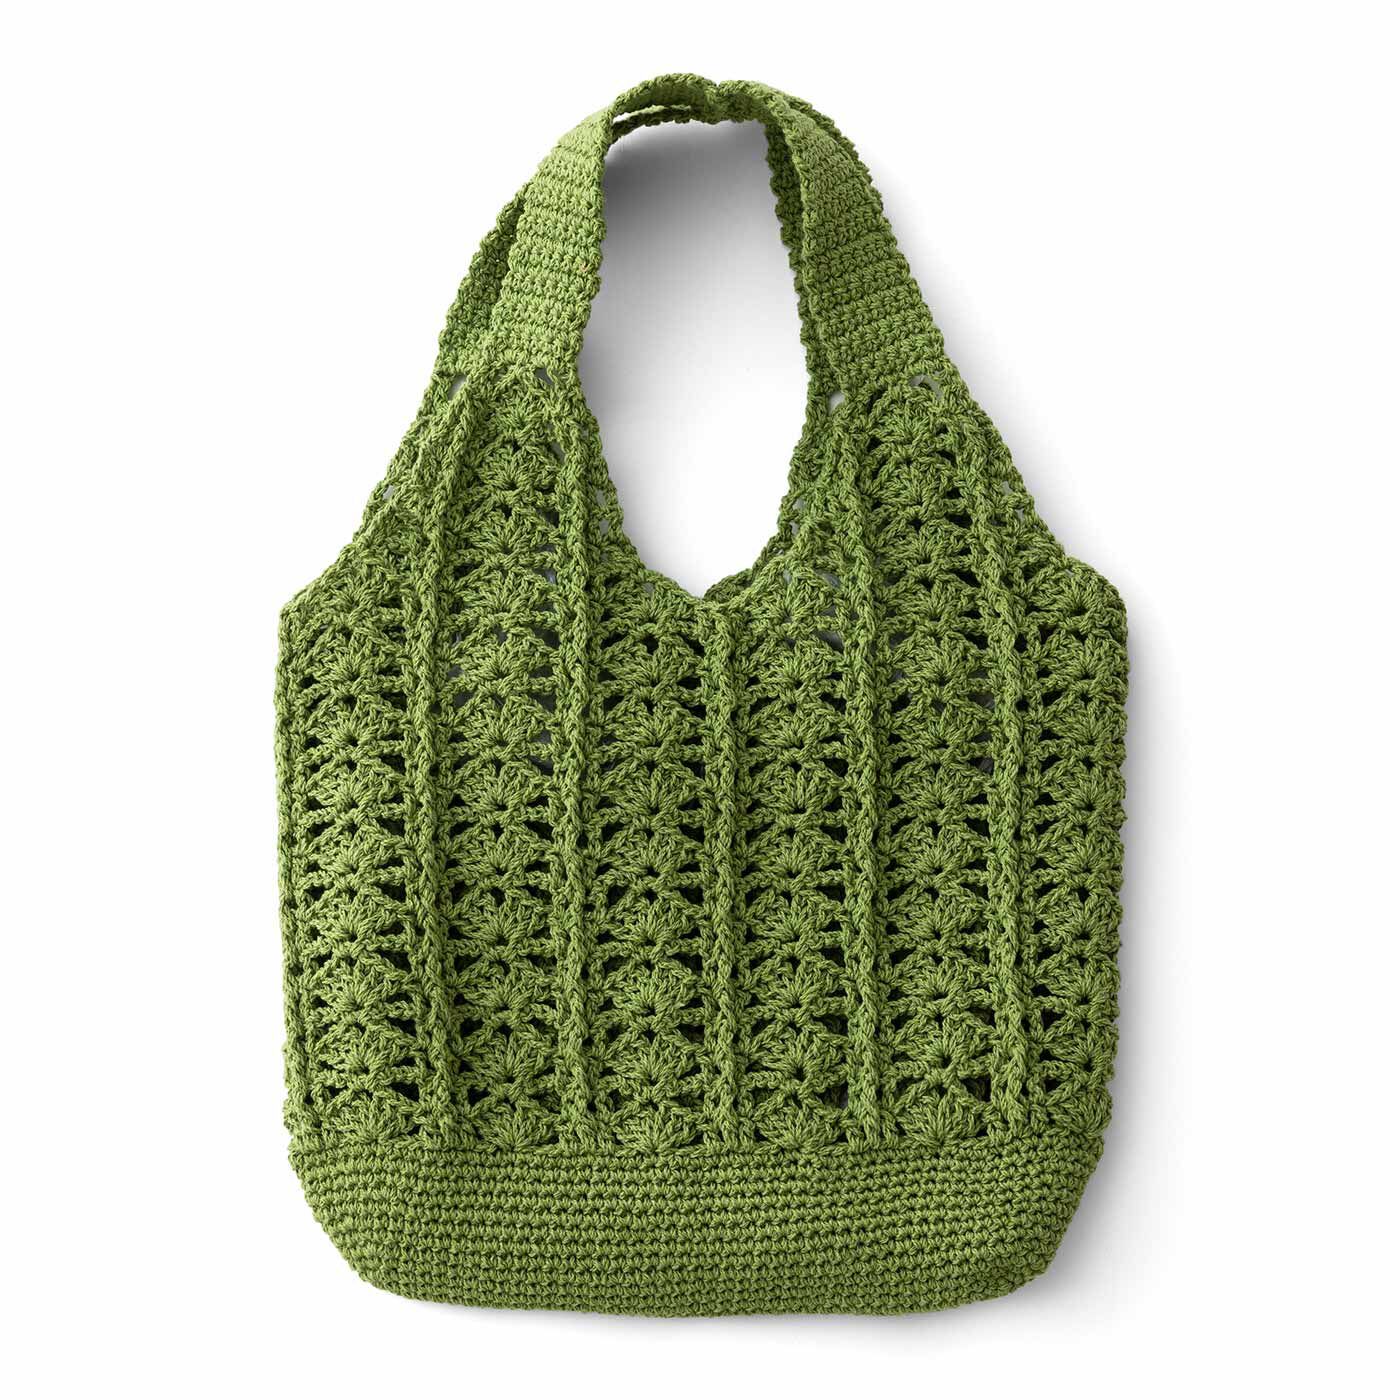 Real Stock|涼しげな編み地が自慢 透け感がおしゃれなかぎ針編みバッグ|2：フォレストグリーンの葉模様バッグ